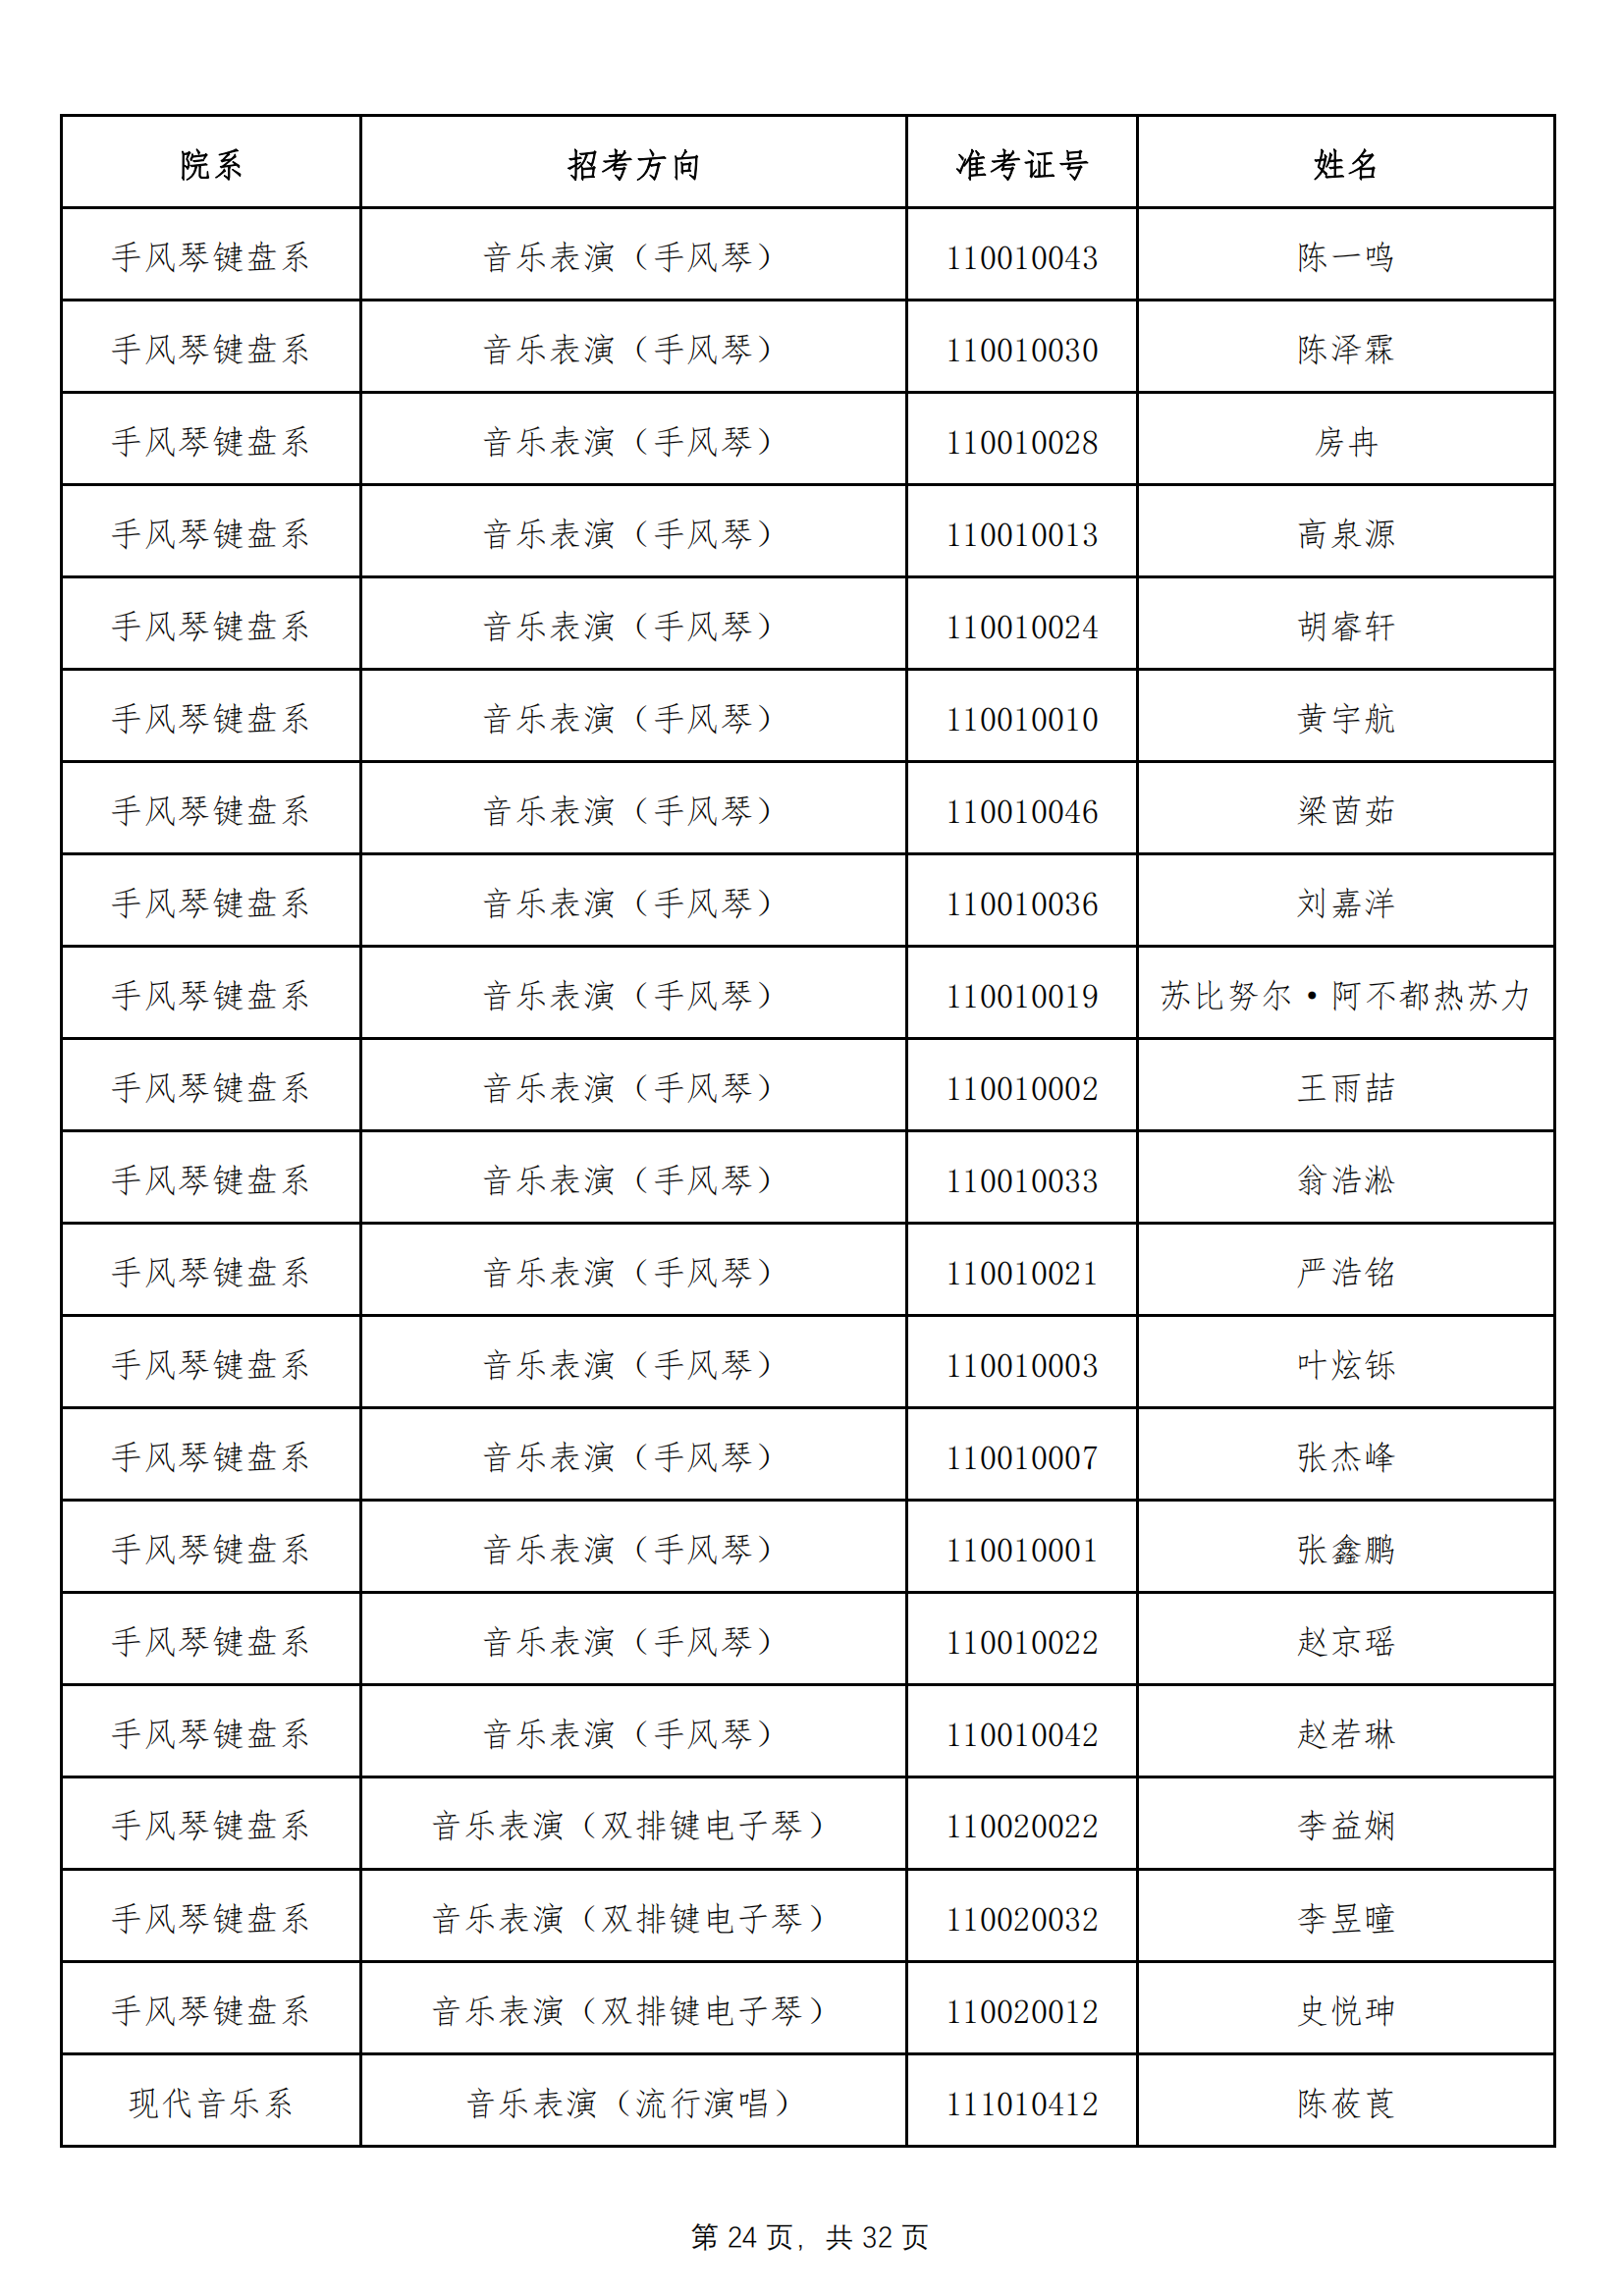 天津音乐学院2022年本科招生拟录取名单 （除上海考生外）_23.png